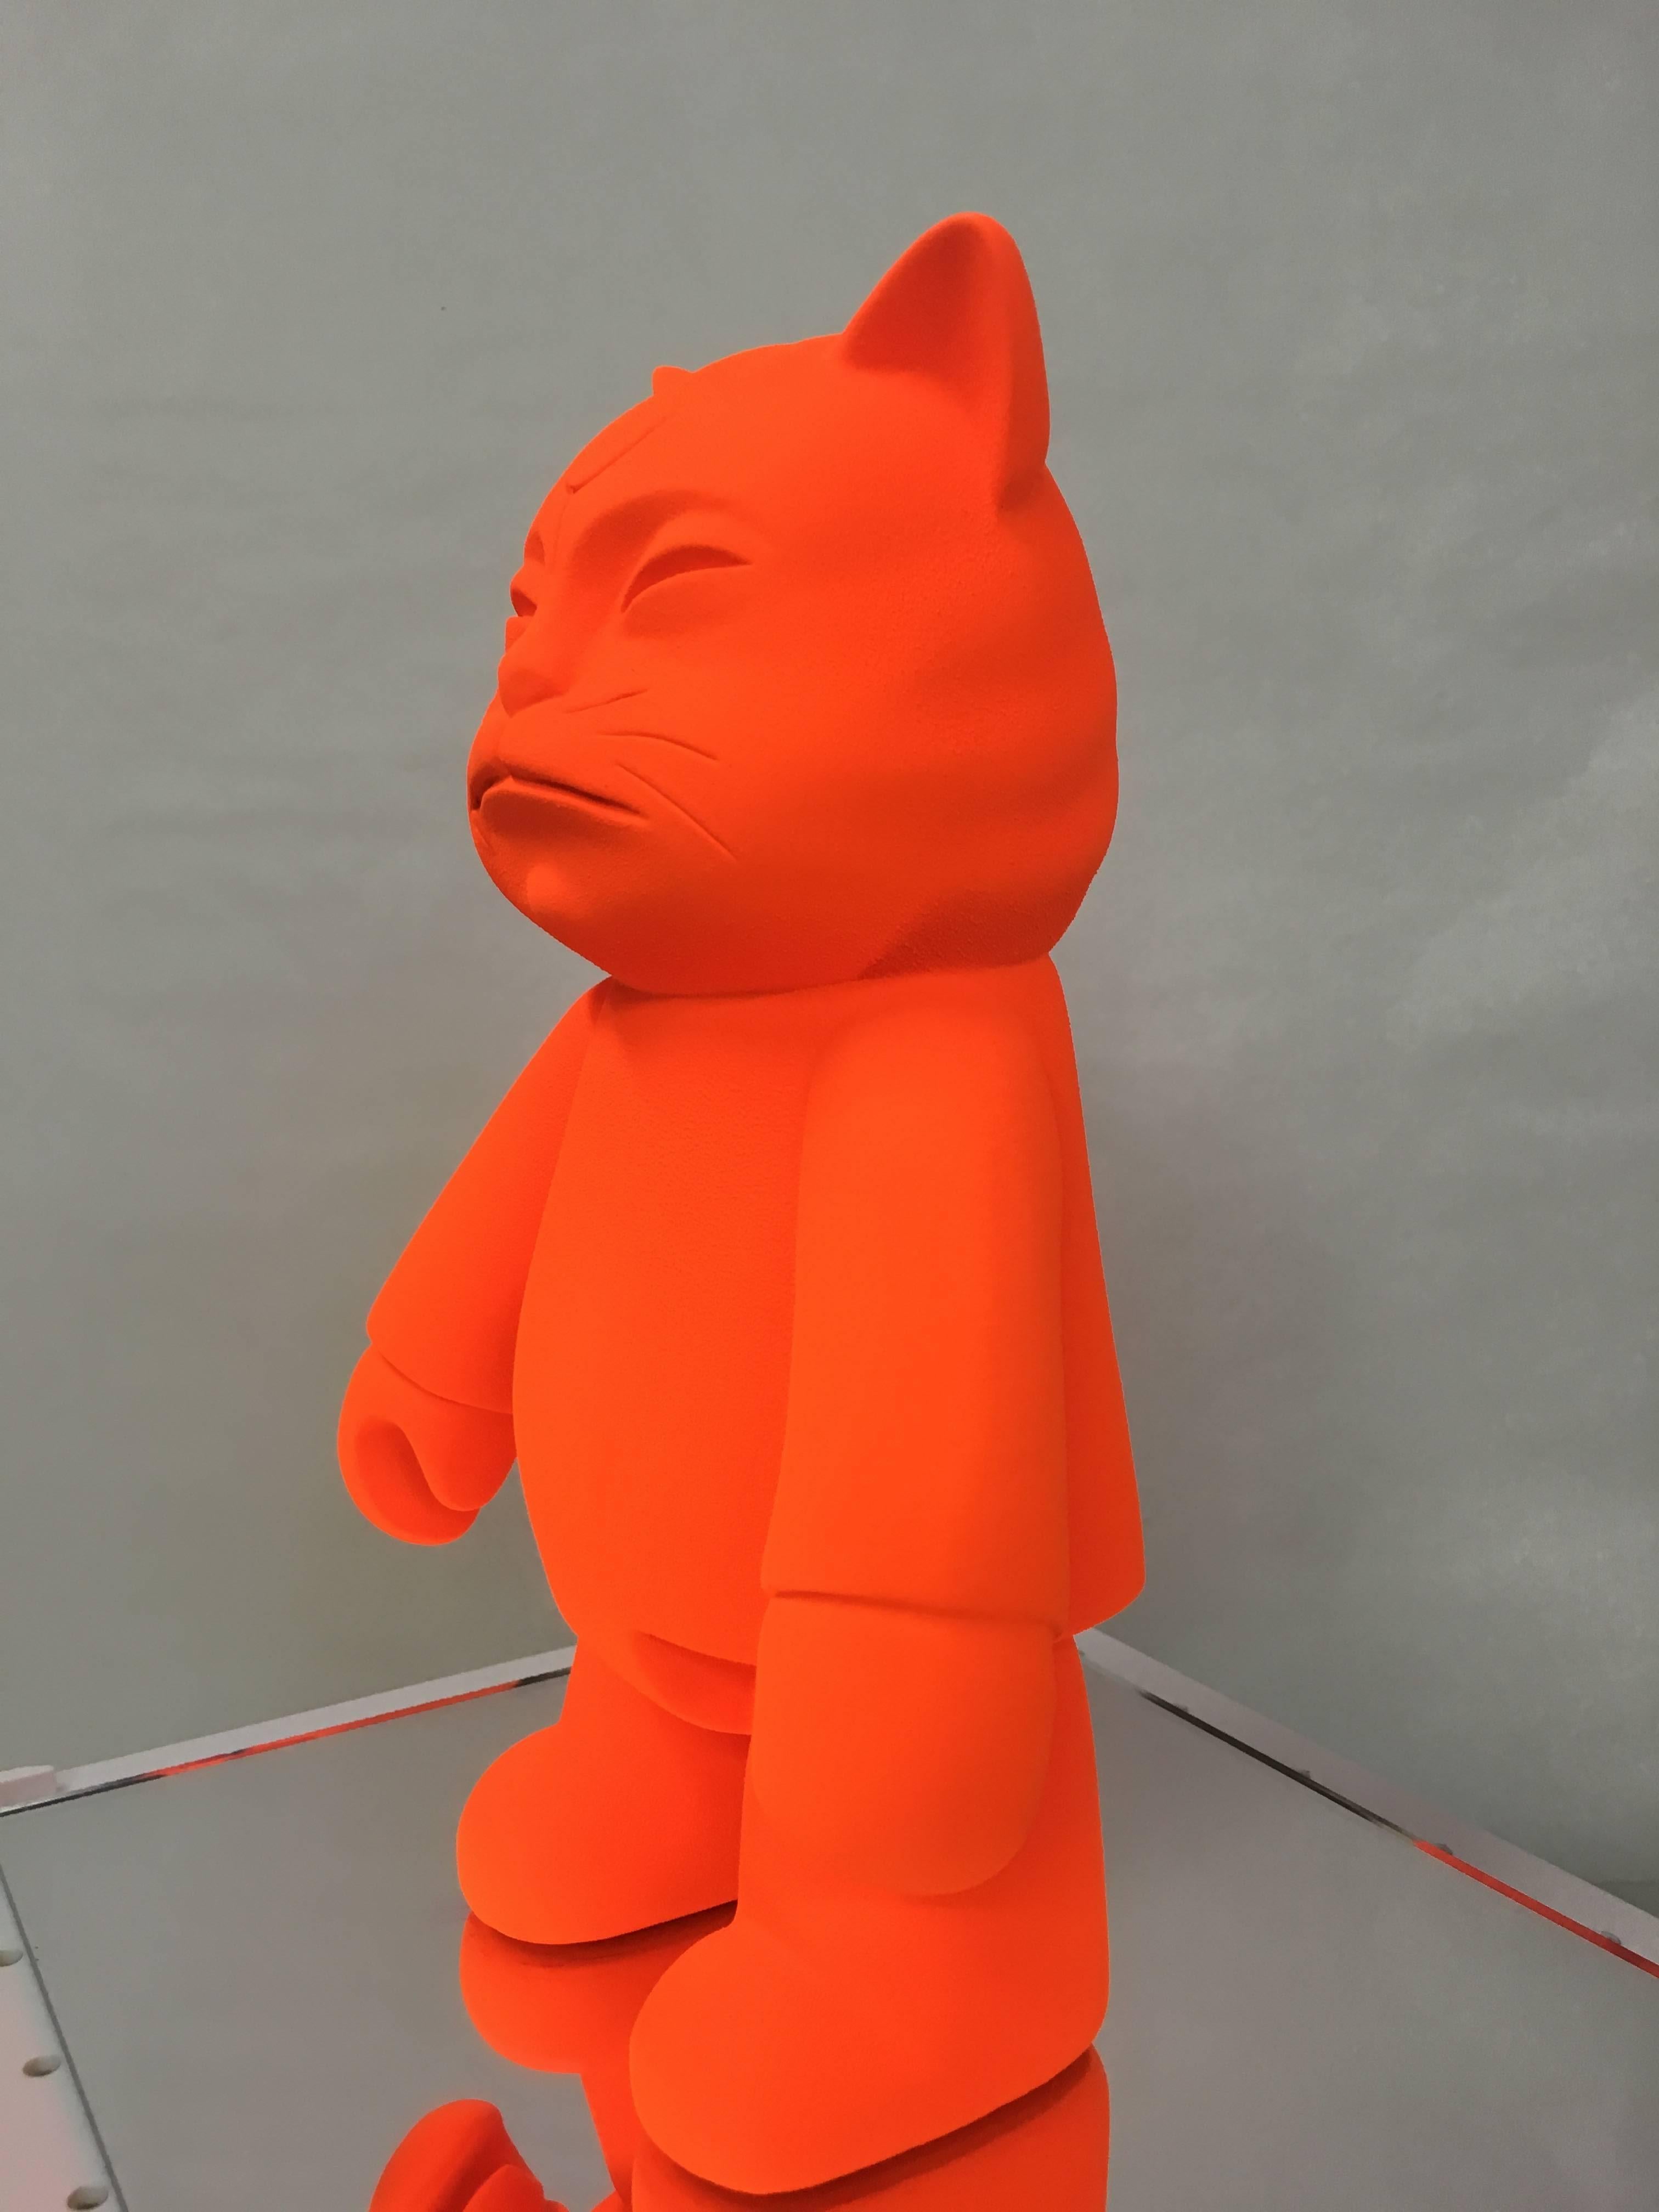  Hiro Ando  Cat  Orange. 